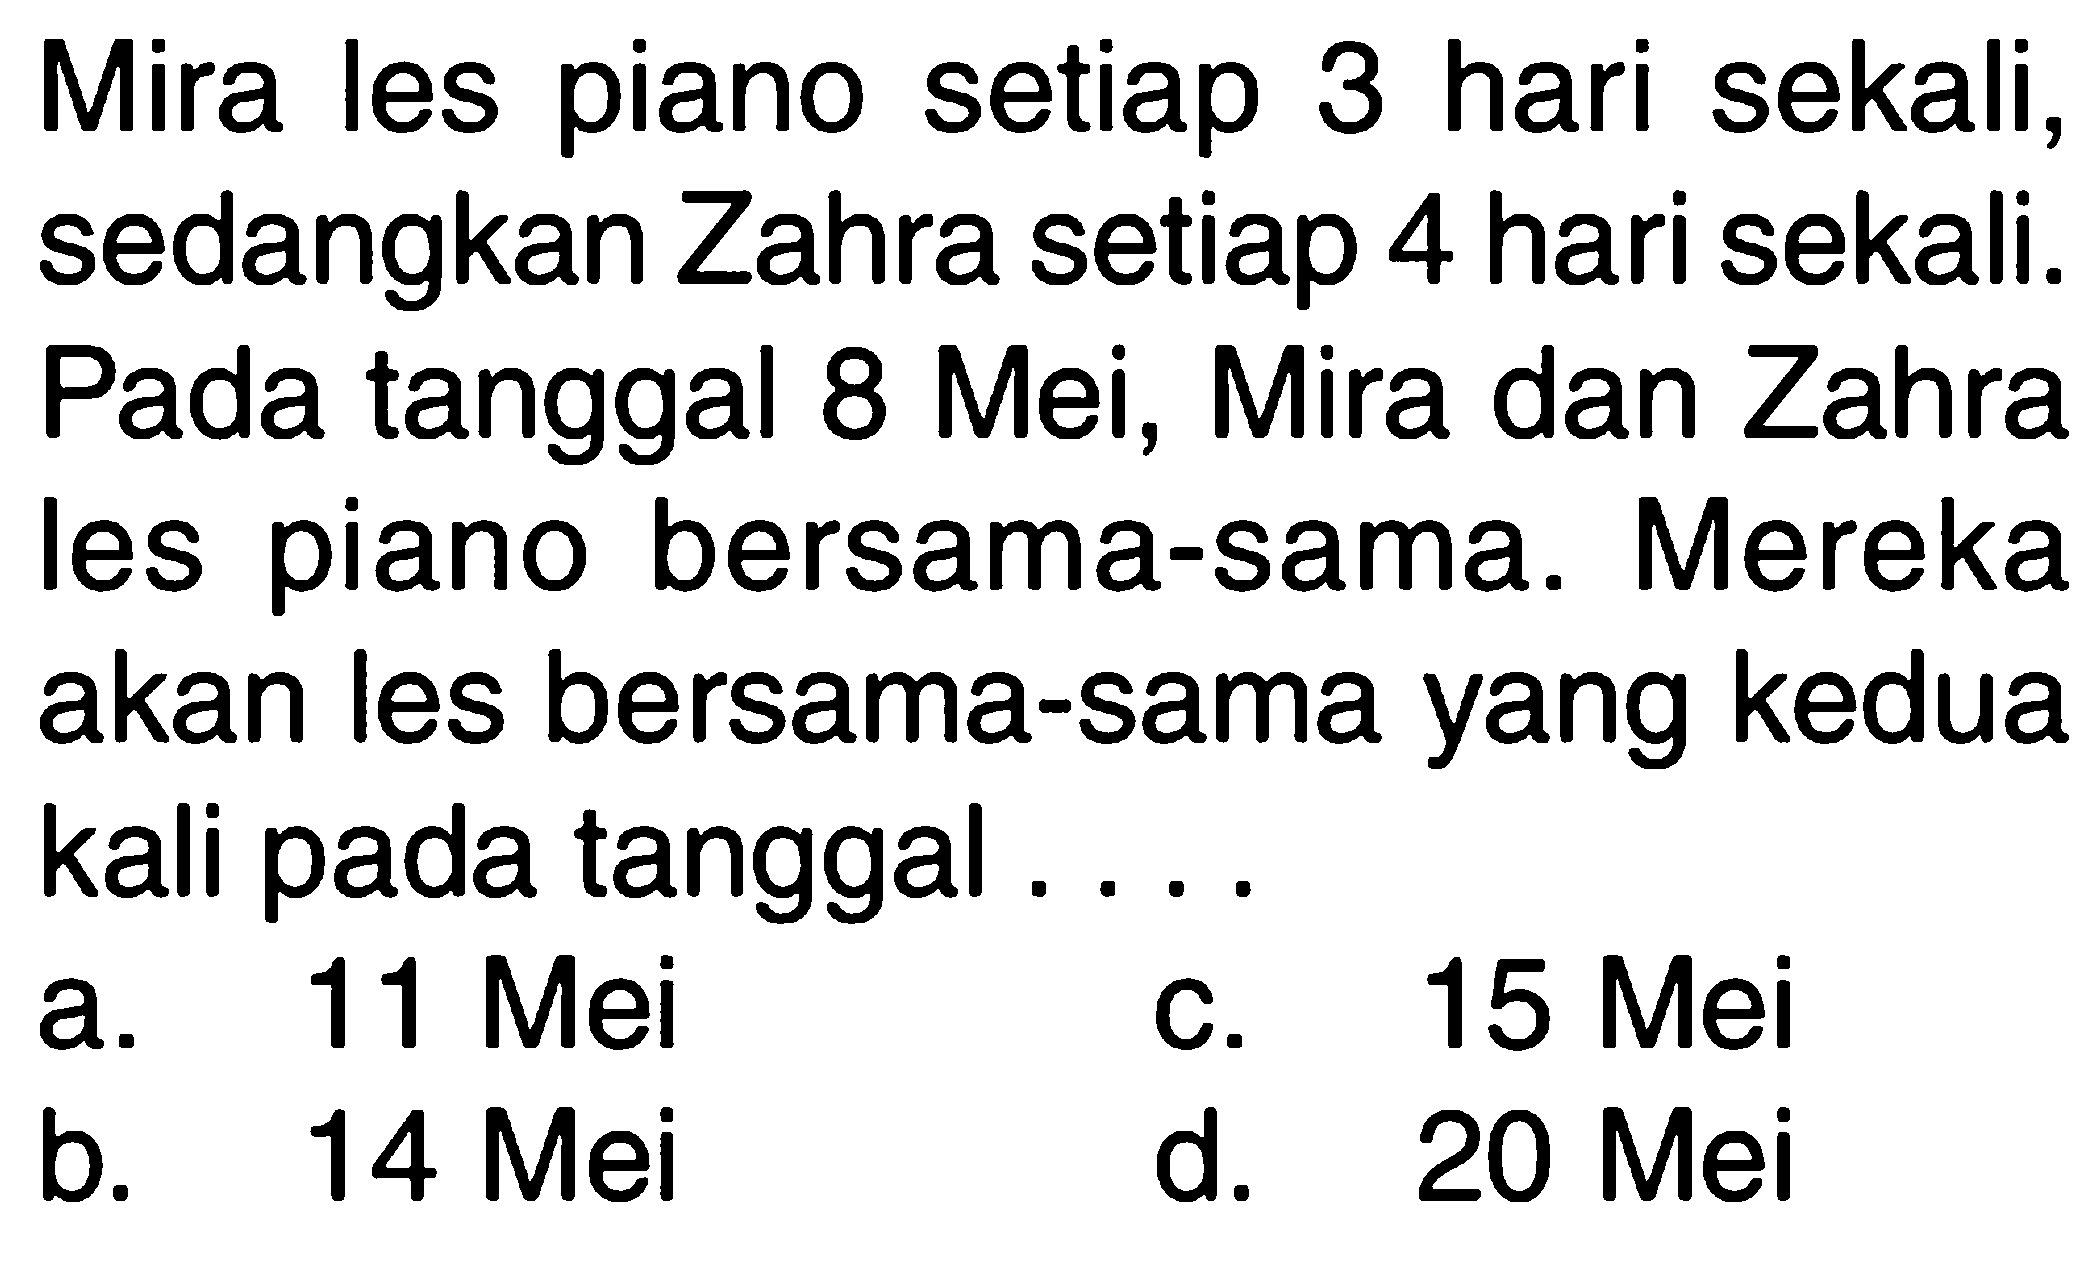 Mira les piano setiap 3 hari sekali, sedangkan Zahra setiap 4 hari sekali. Pada tanggal 8 Mei, Mira dan Zahra les piano bersama-sama. Mereka akan les bersama-sama yang kedua kali pada tanggal ....